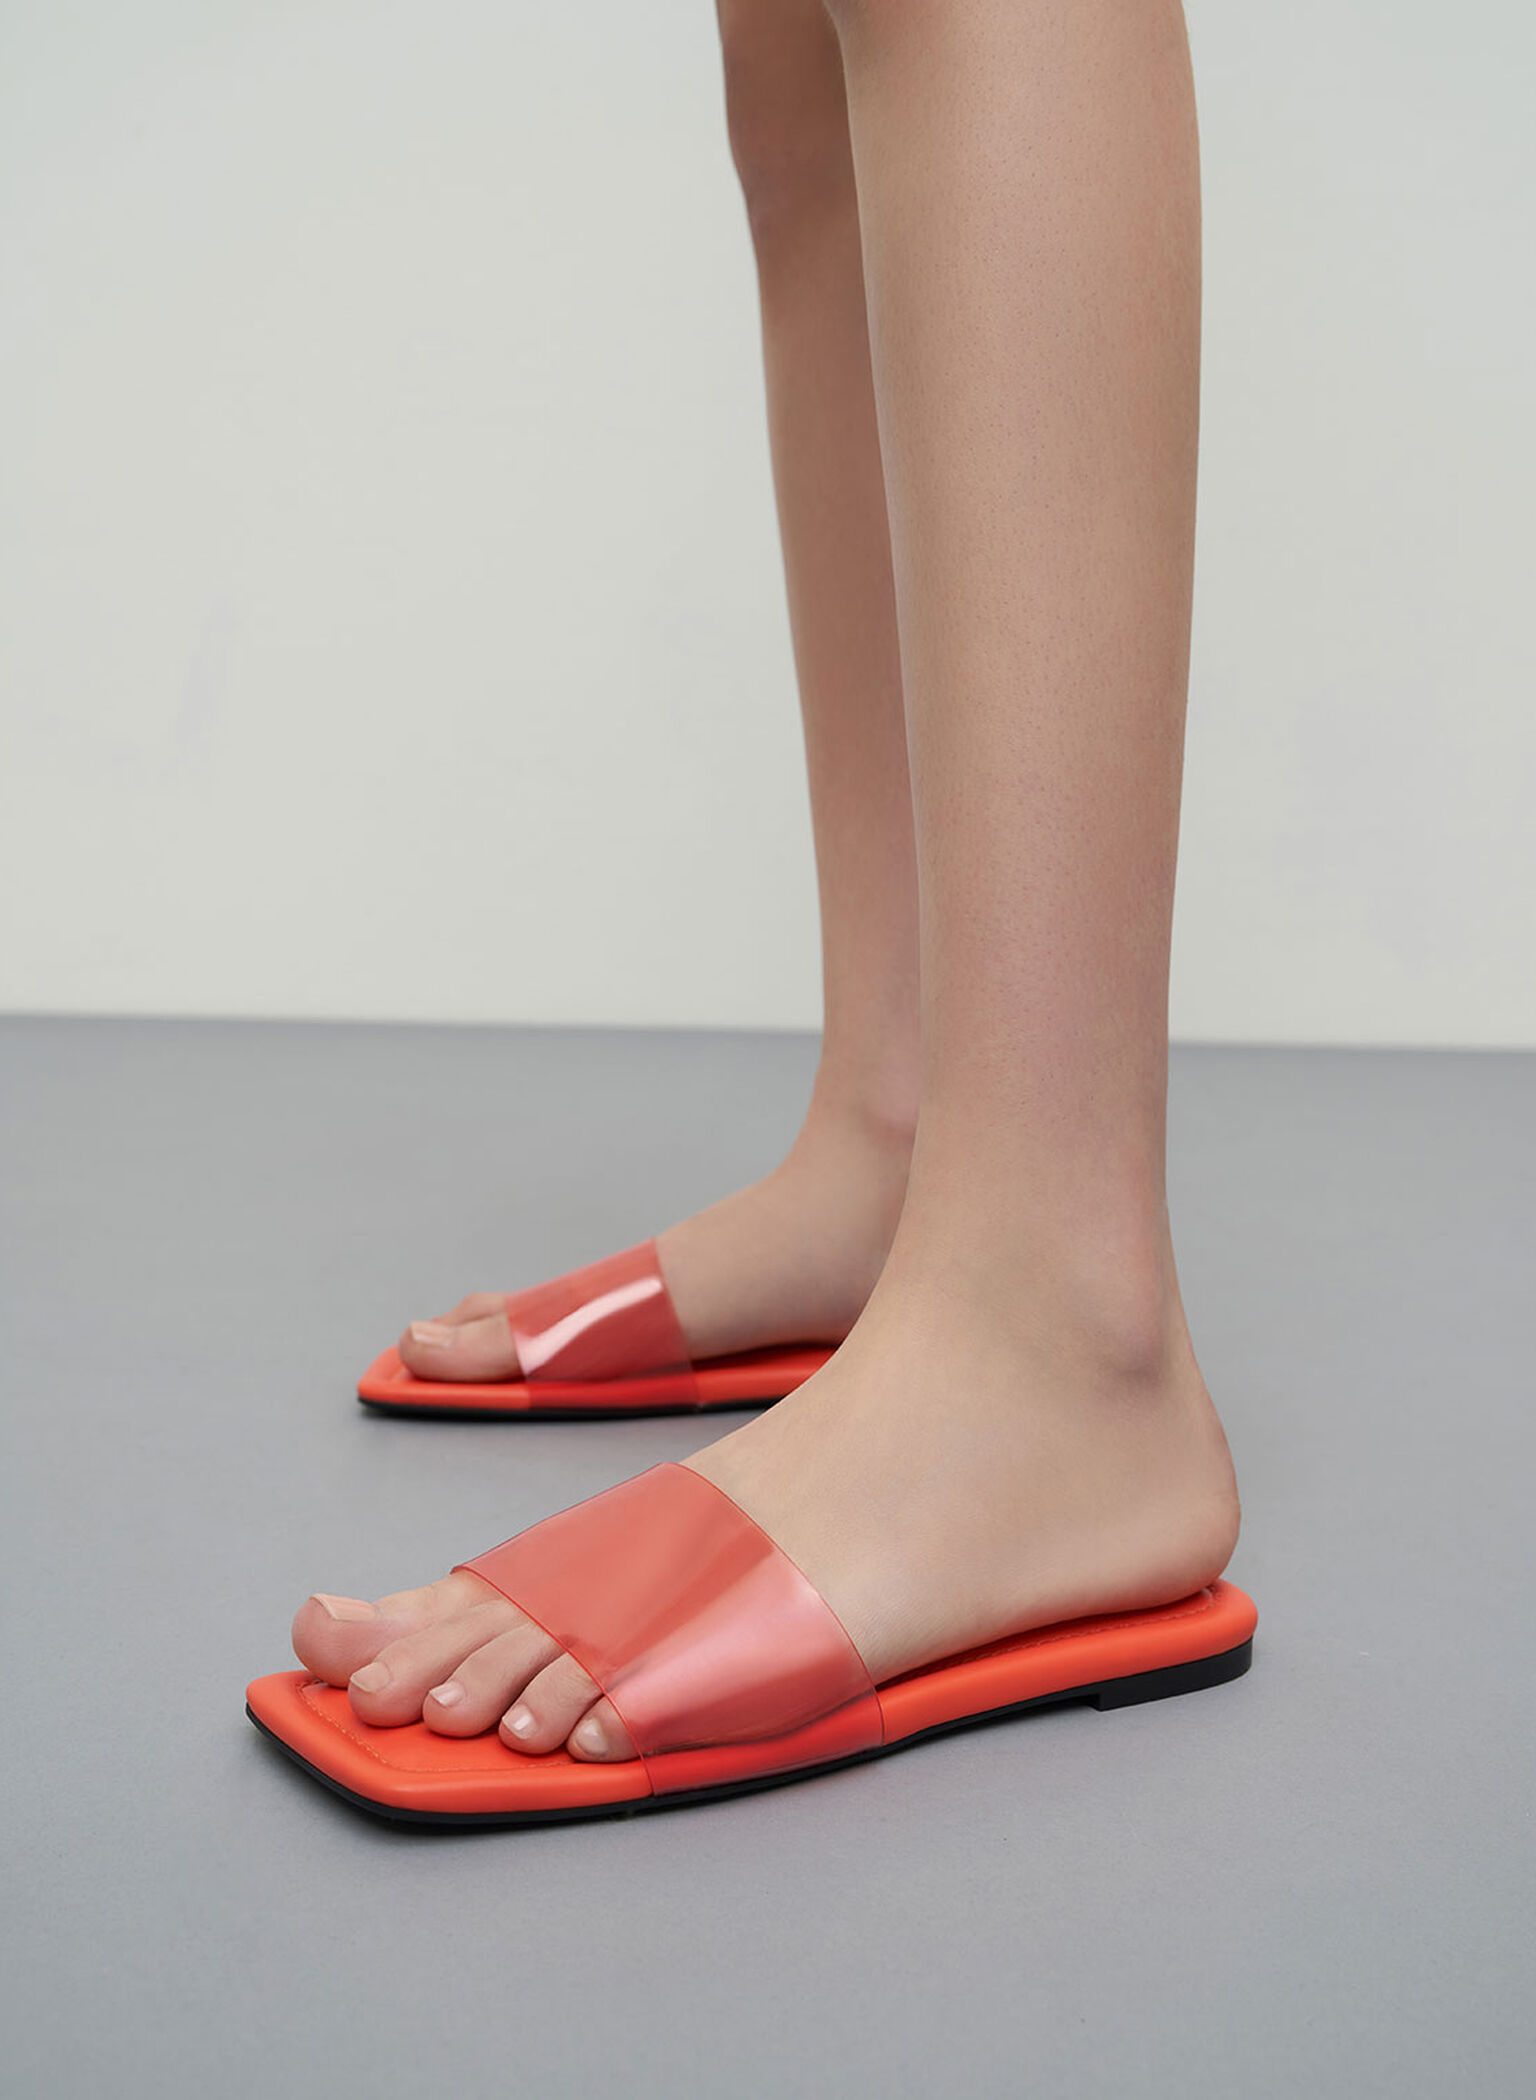 Padded Slide Sandals, Orange, hi-res